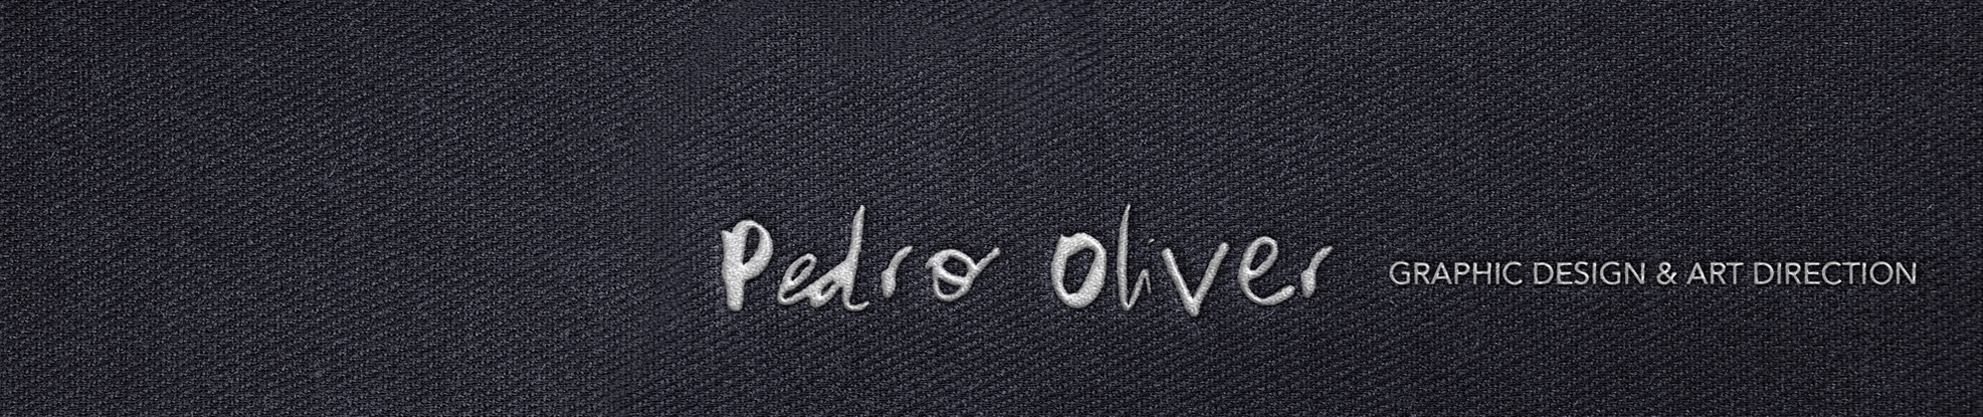 Pedro Oliver's profile banner